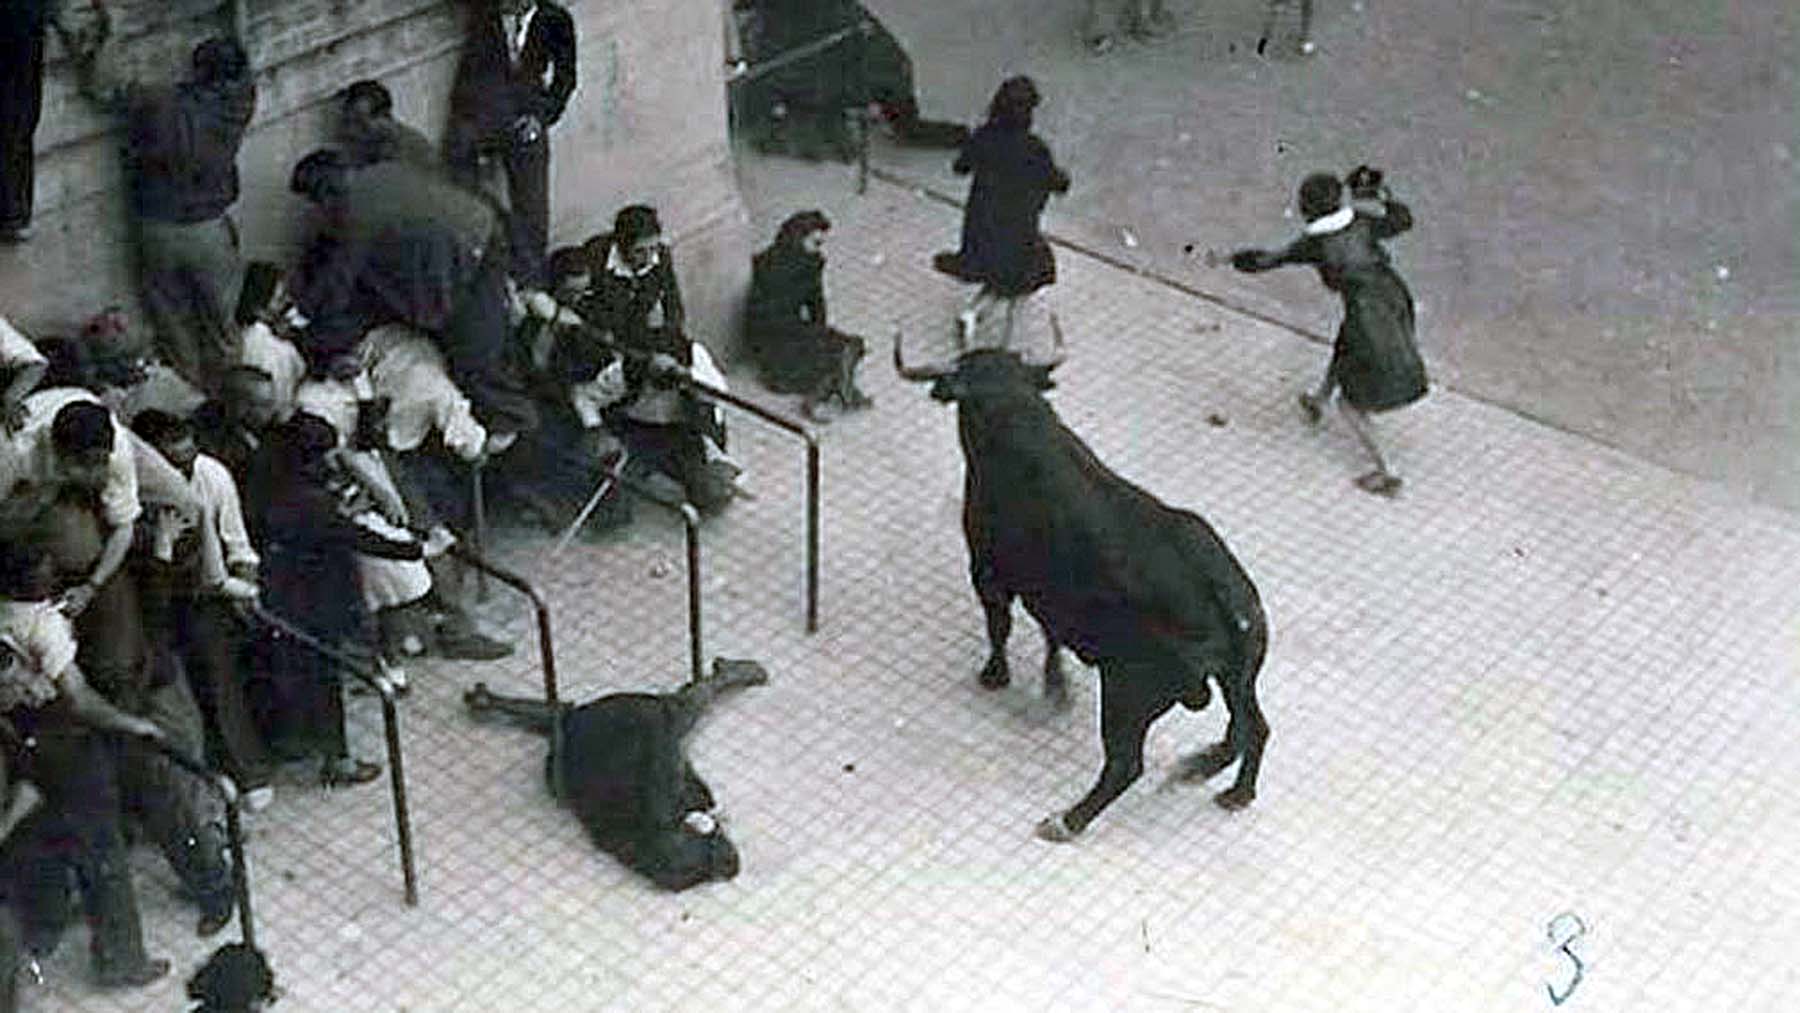 08/07/1939 La madre, Clara Herrera, yace herida en el suelo, María Jesús Larequi escapa con el bolso de su madre. FOTO: José Galle Gallego.